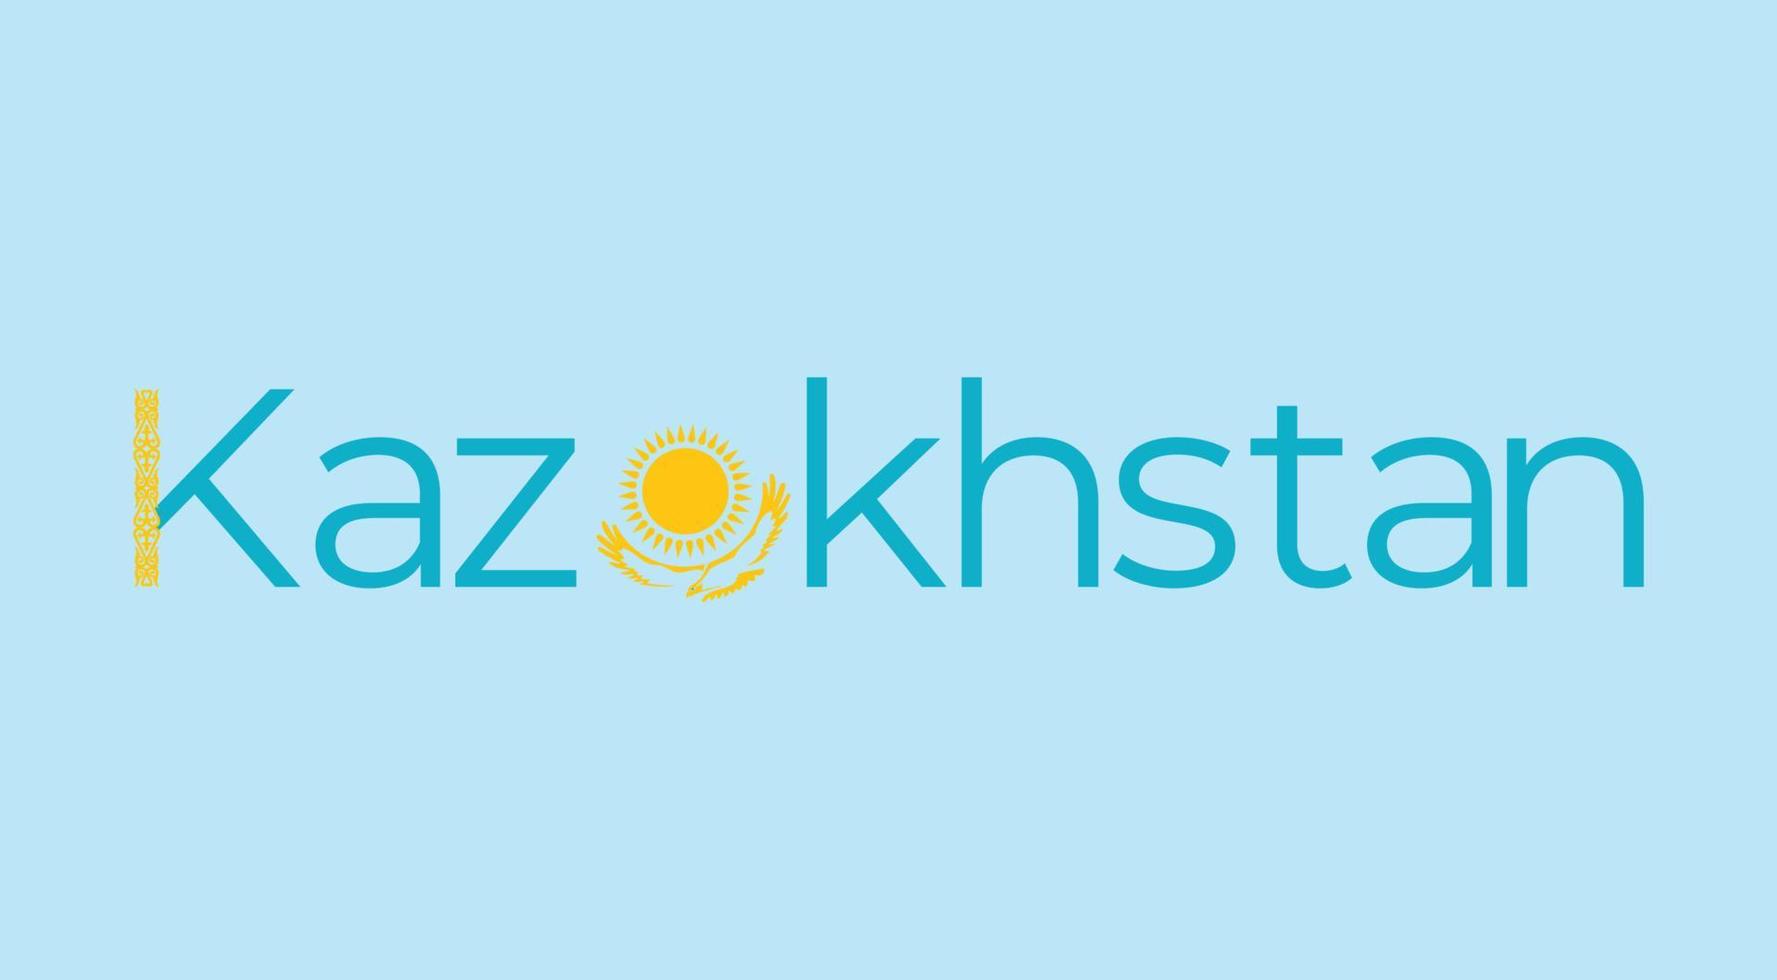 Typografie-Design von Kasachstan vektor